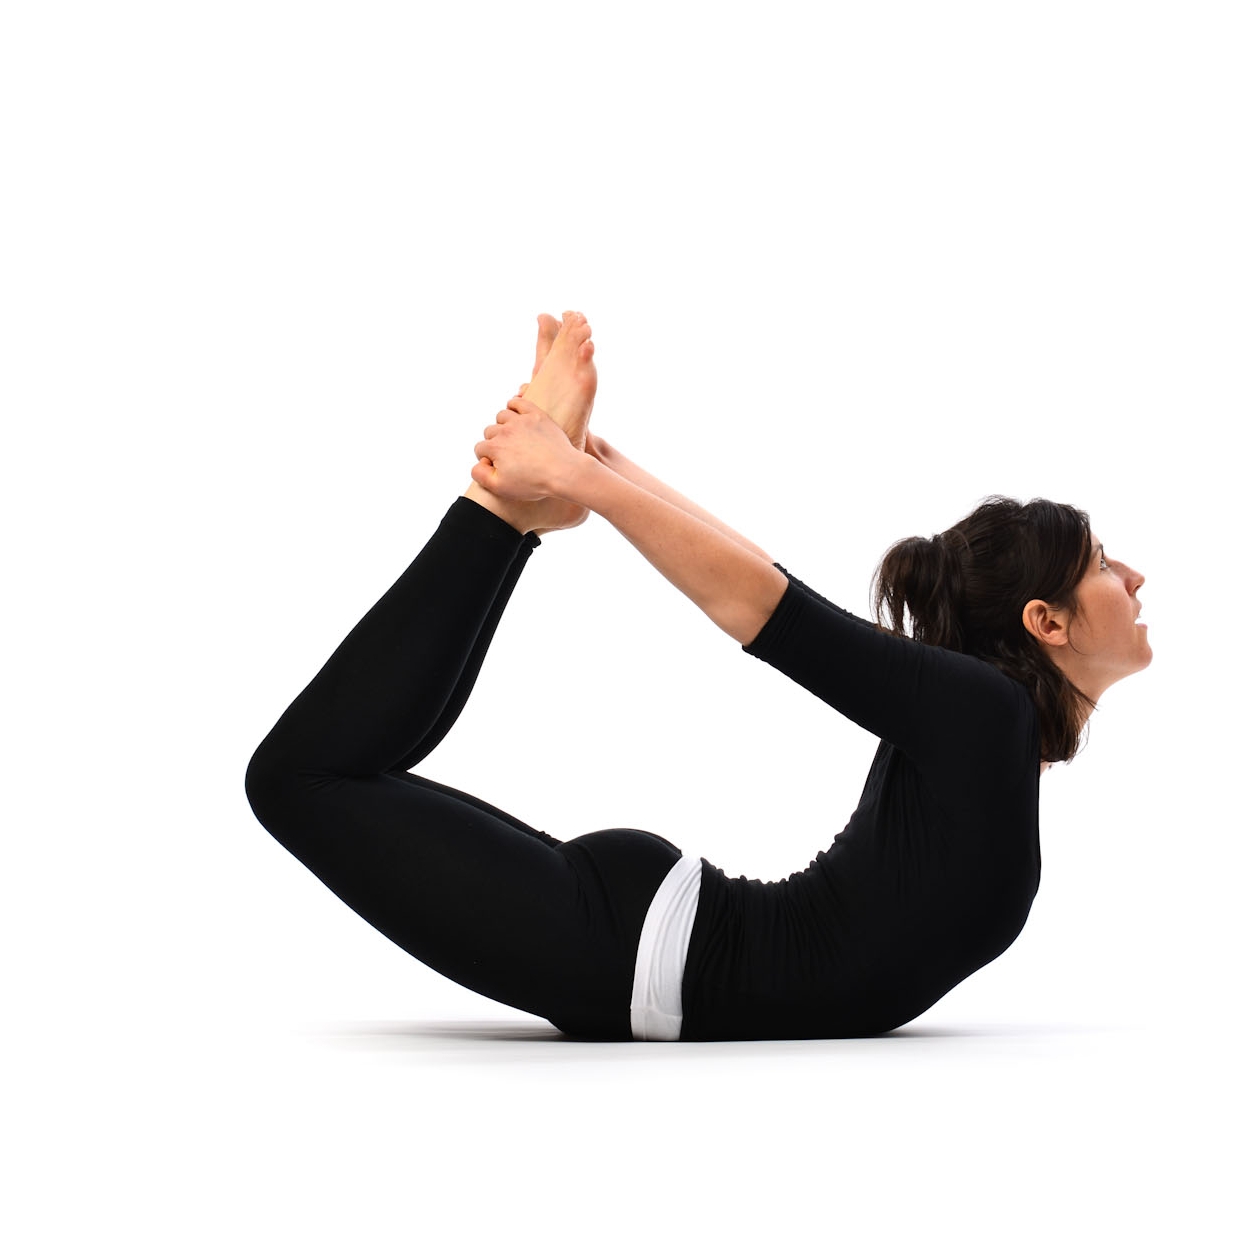 7 exercices pratiques pour eliminer les plis dans le dos et sur les cotes 1 7 exercices pratiques pour éliminer les plis dans le dos et sur les côtés